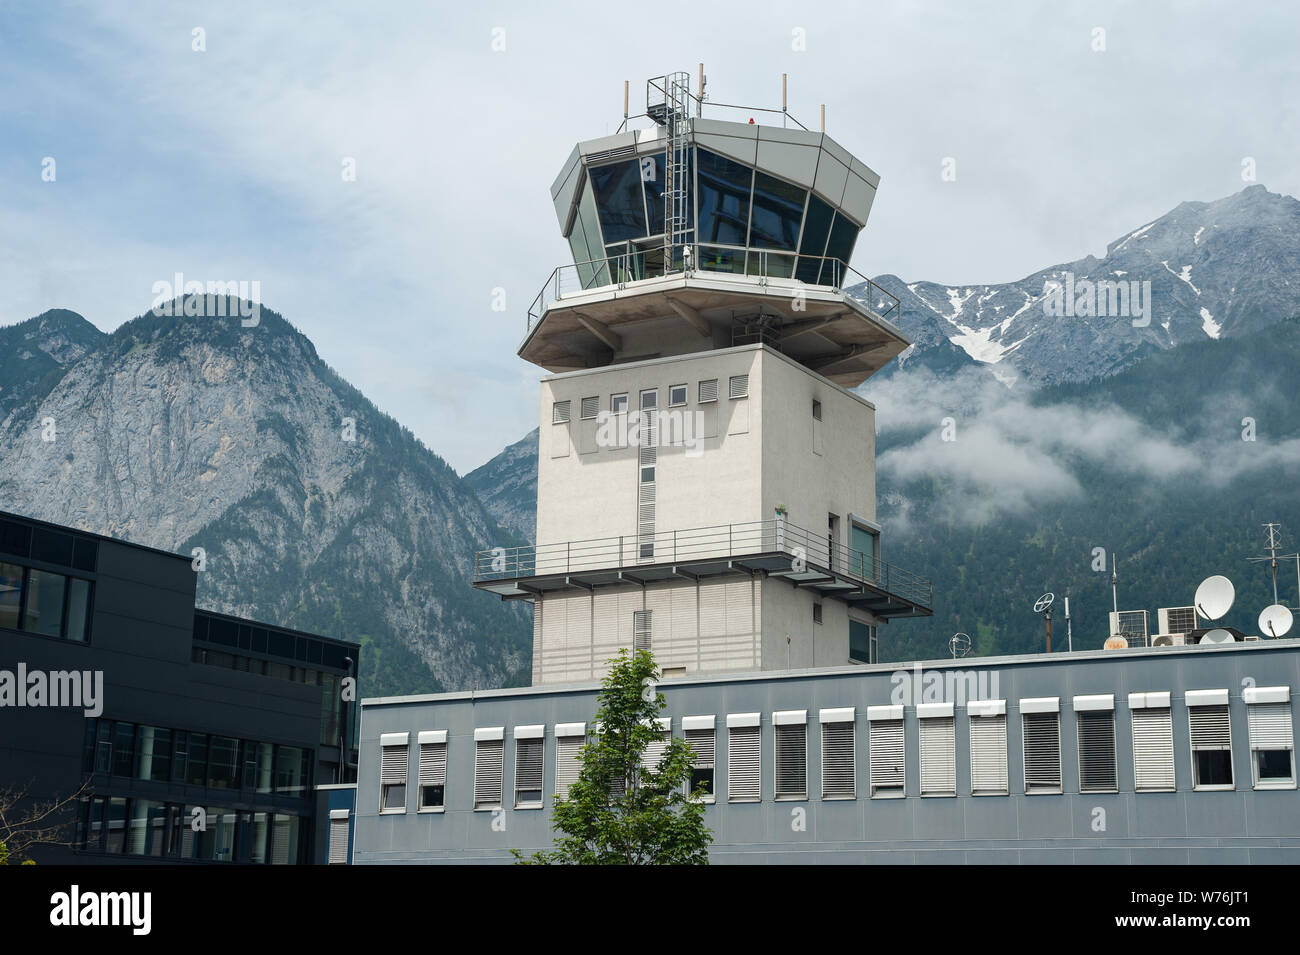 22.06.2019, Innsbruck, in Tirolo, Austria, Europa - vista esterna dall'aeroporto di Innsbruck con la torre di ATC e le montagne come sfondo. Foto Stock